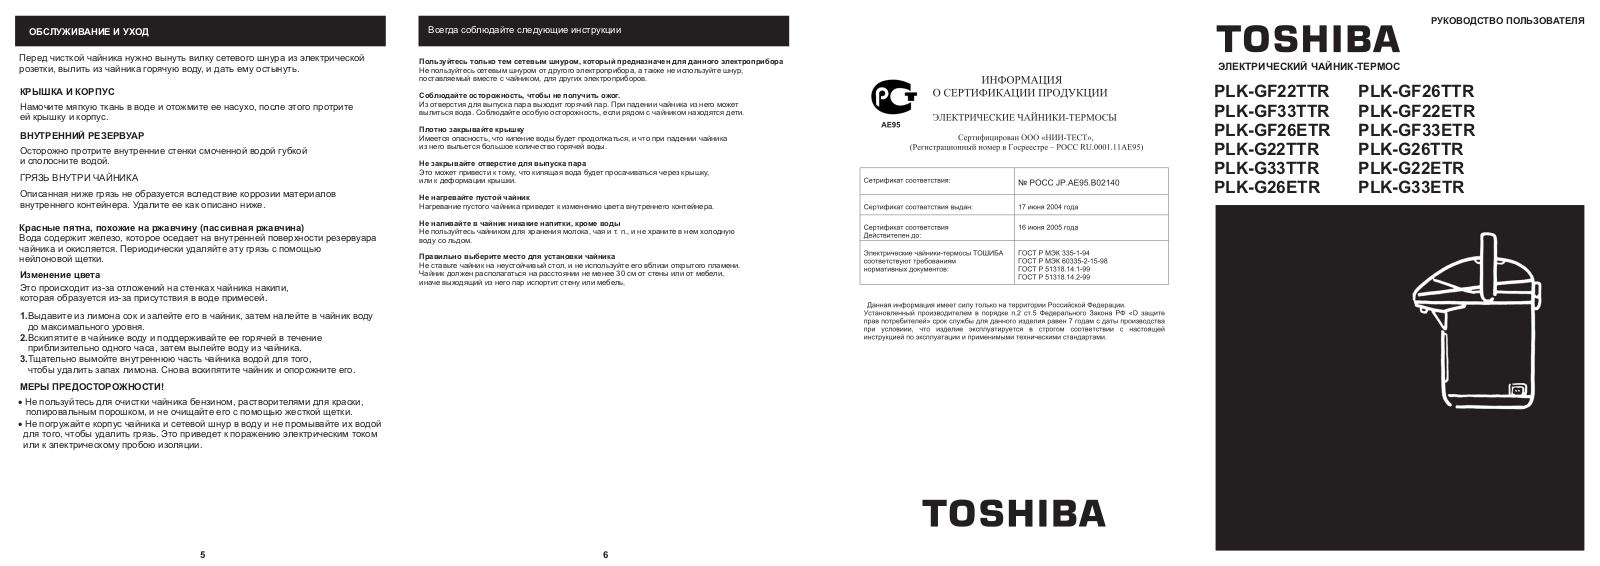 Toshiba PLK-G33TTR, PLK-G22ETR User Manual